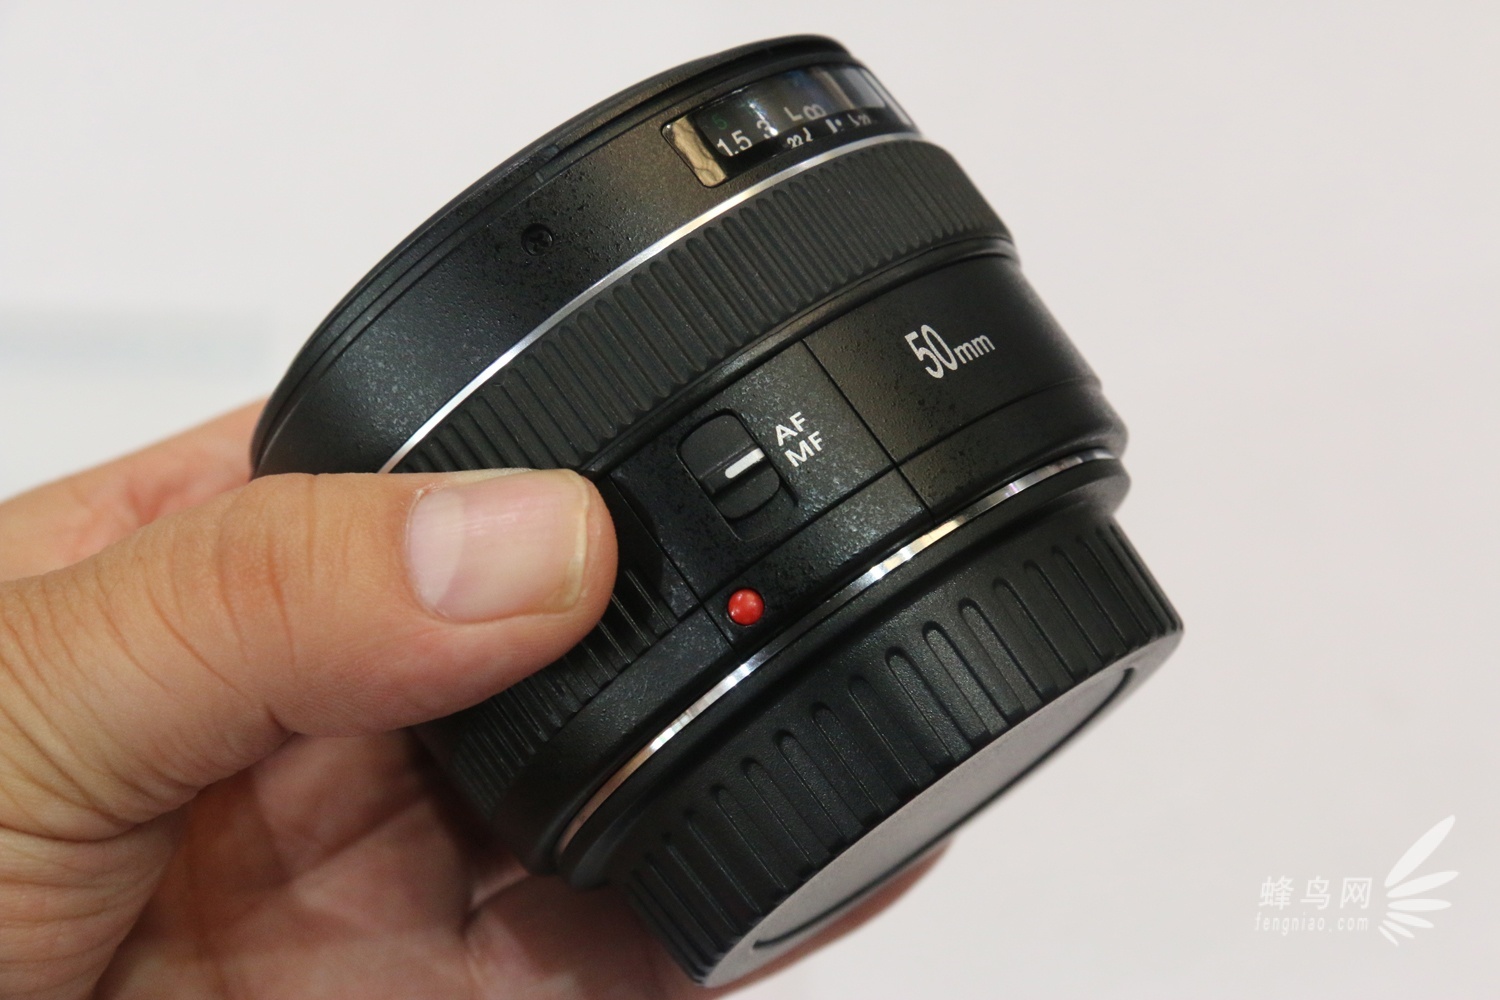 国产新镜 永诺50mm F1.4镜头P&I2014登场